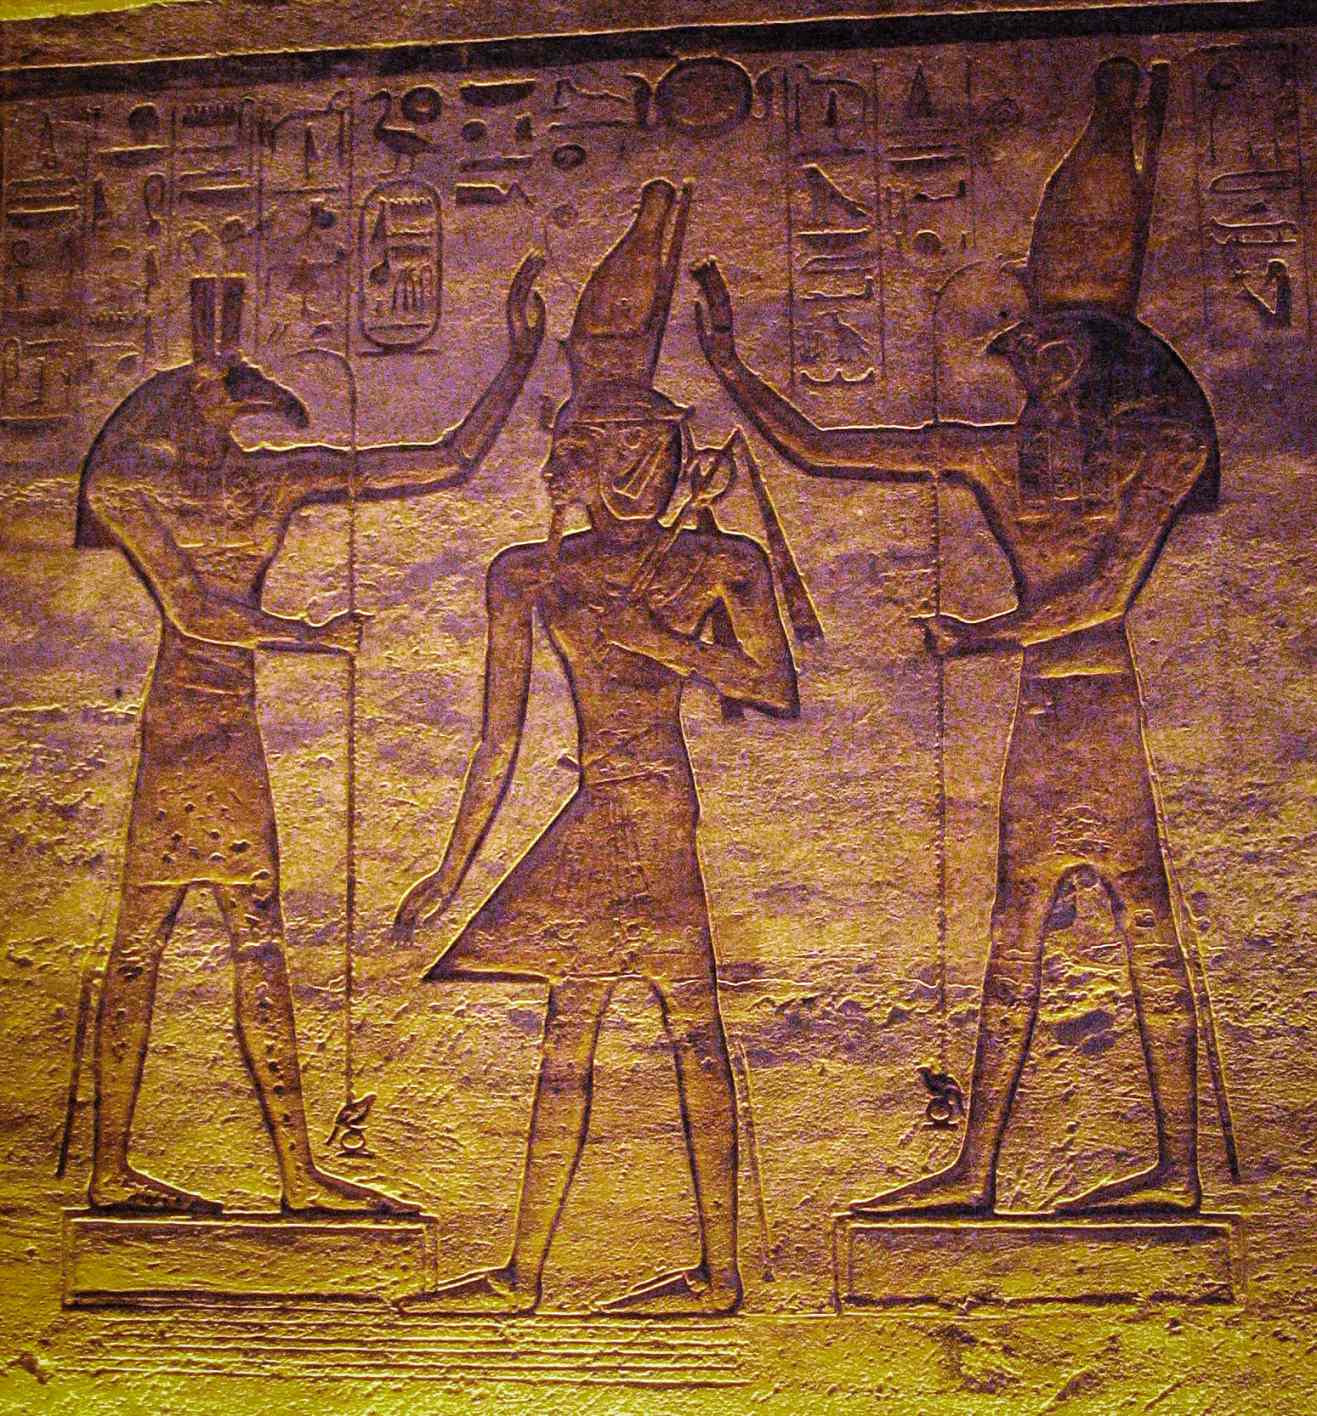 සෙට් (සෙත්) සහ හෝරස් රැම්සෙස්ට ආදරය කරයි. වර්තමාන අධ්‍යයනයෙන් පෙන්නුම් කරන්නේ කයිරෝ දින දර්ශනයේ චන්ද්‍රයා Seth සහ Algol විචල්‍ය තාරකාව Horus විසින් නිරූපණය වන්නට ඇති බවයි.